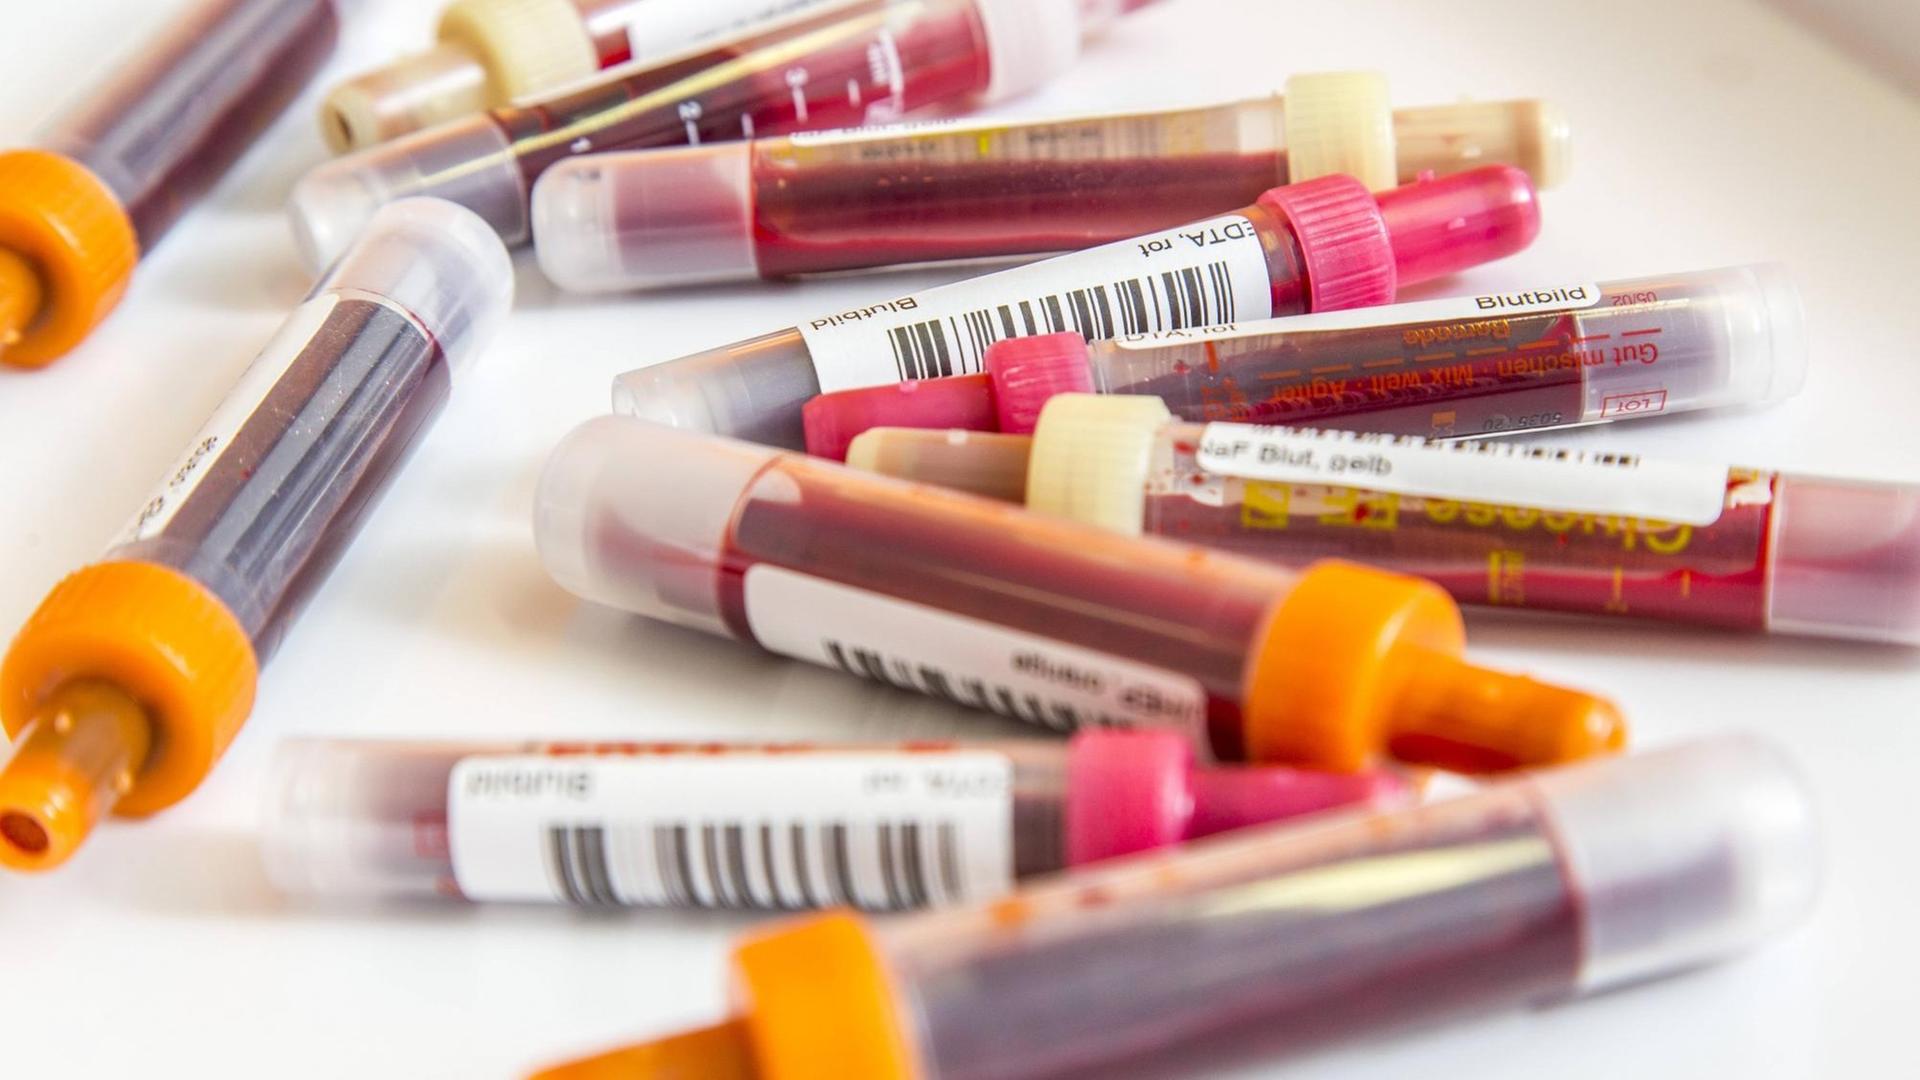 Blutproben in Blutentnahmeröhrchen. Probenbehältnis zur Entnahme und Aufbereitung von Blutproben, Barcode zur Identifizierung der Patienten.